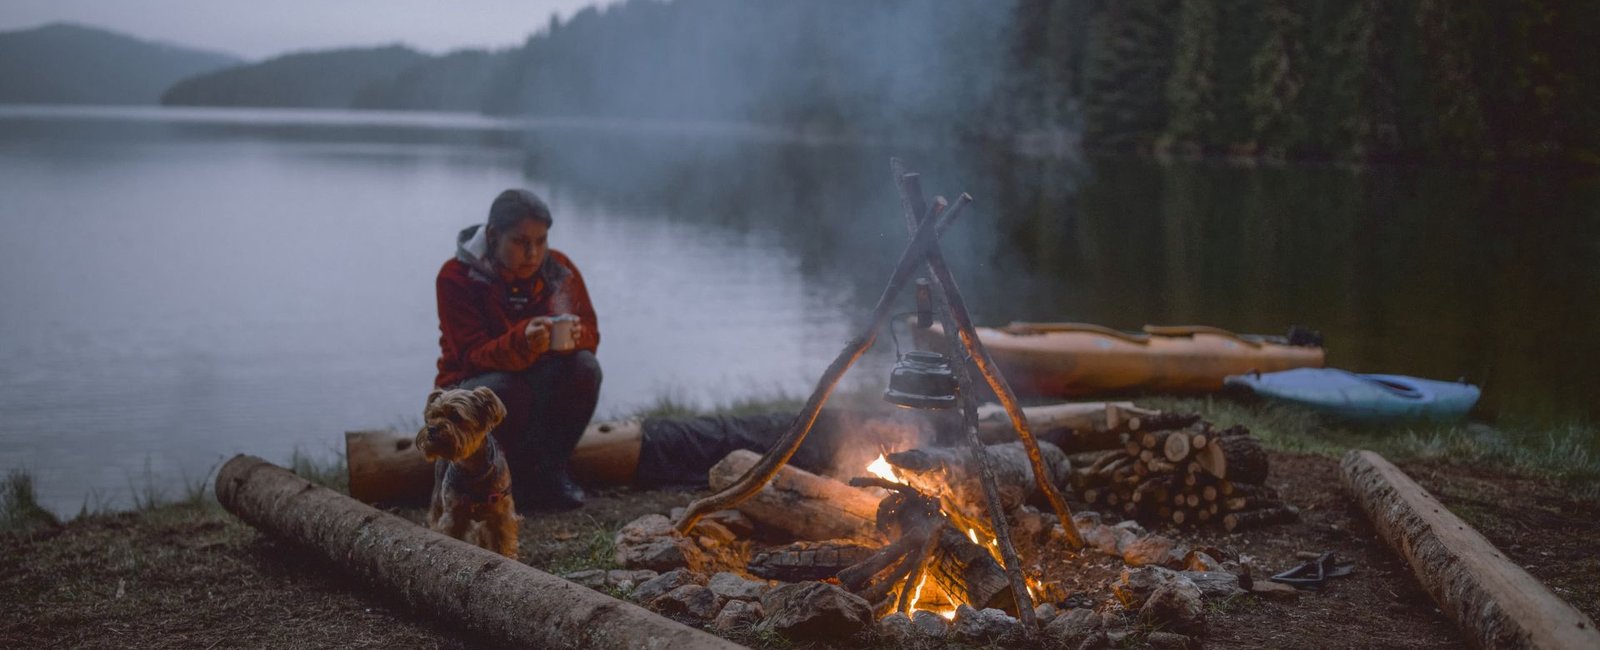 Eine Frau sitzt vor einem Lagerfeuer